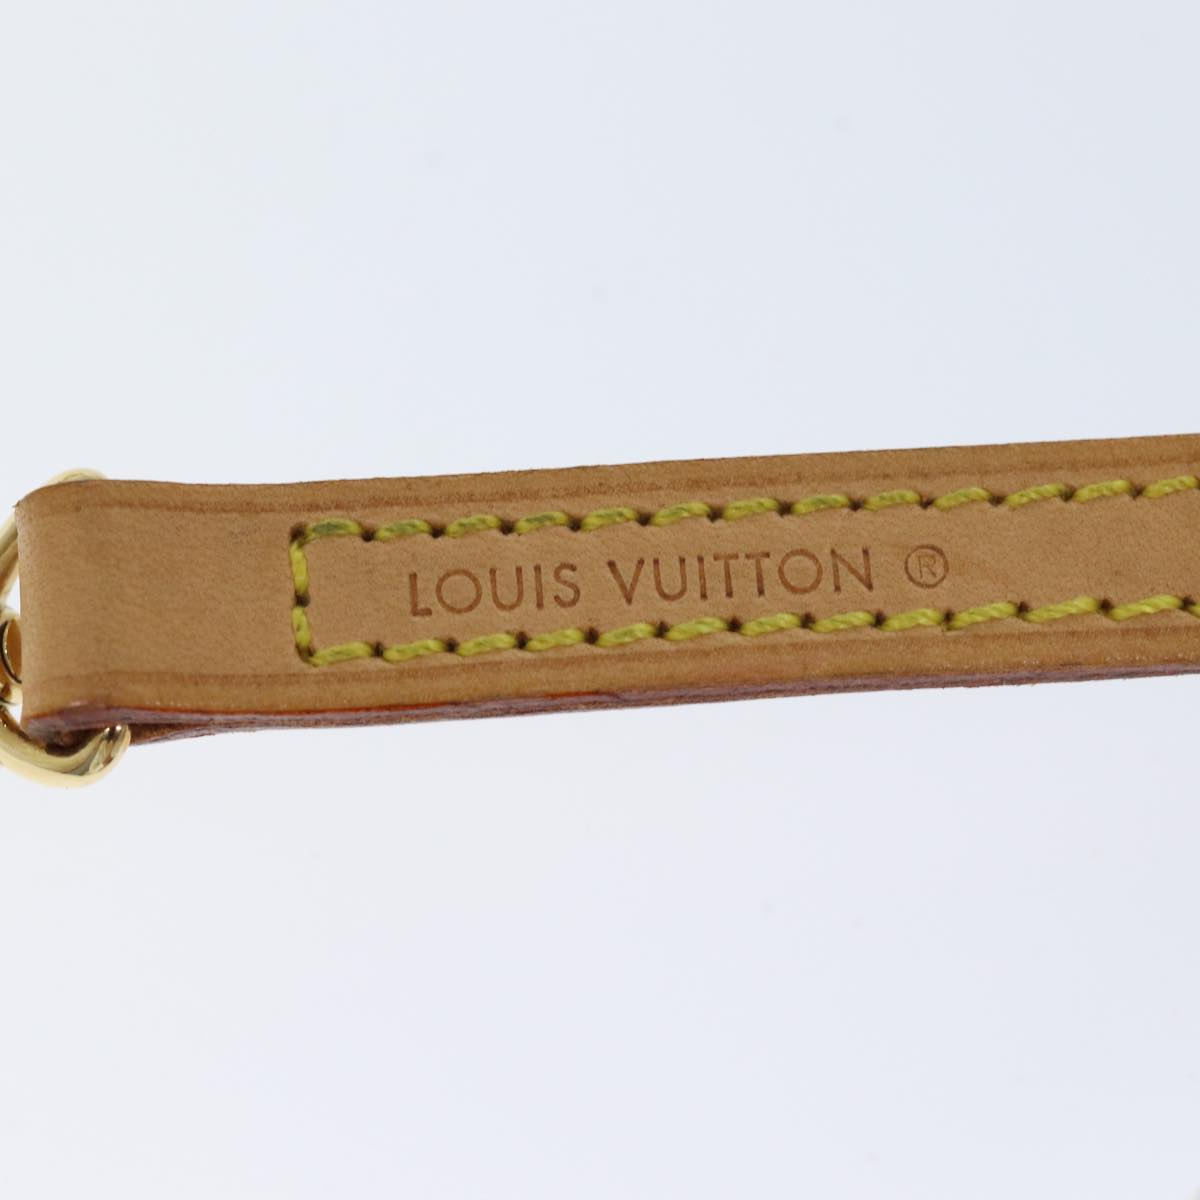 LOUIS VUITTON Shoulder Strap Leather 44.5"" Beige LV Auth ki4320